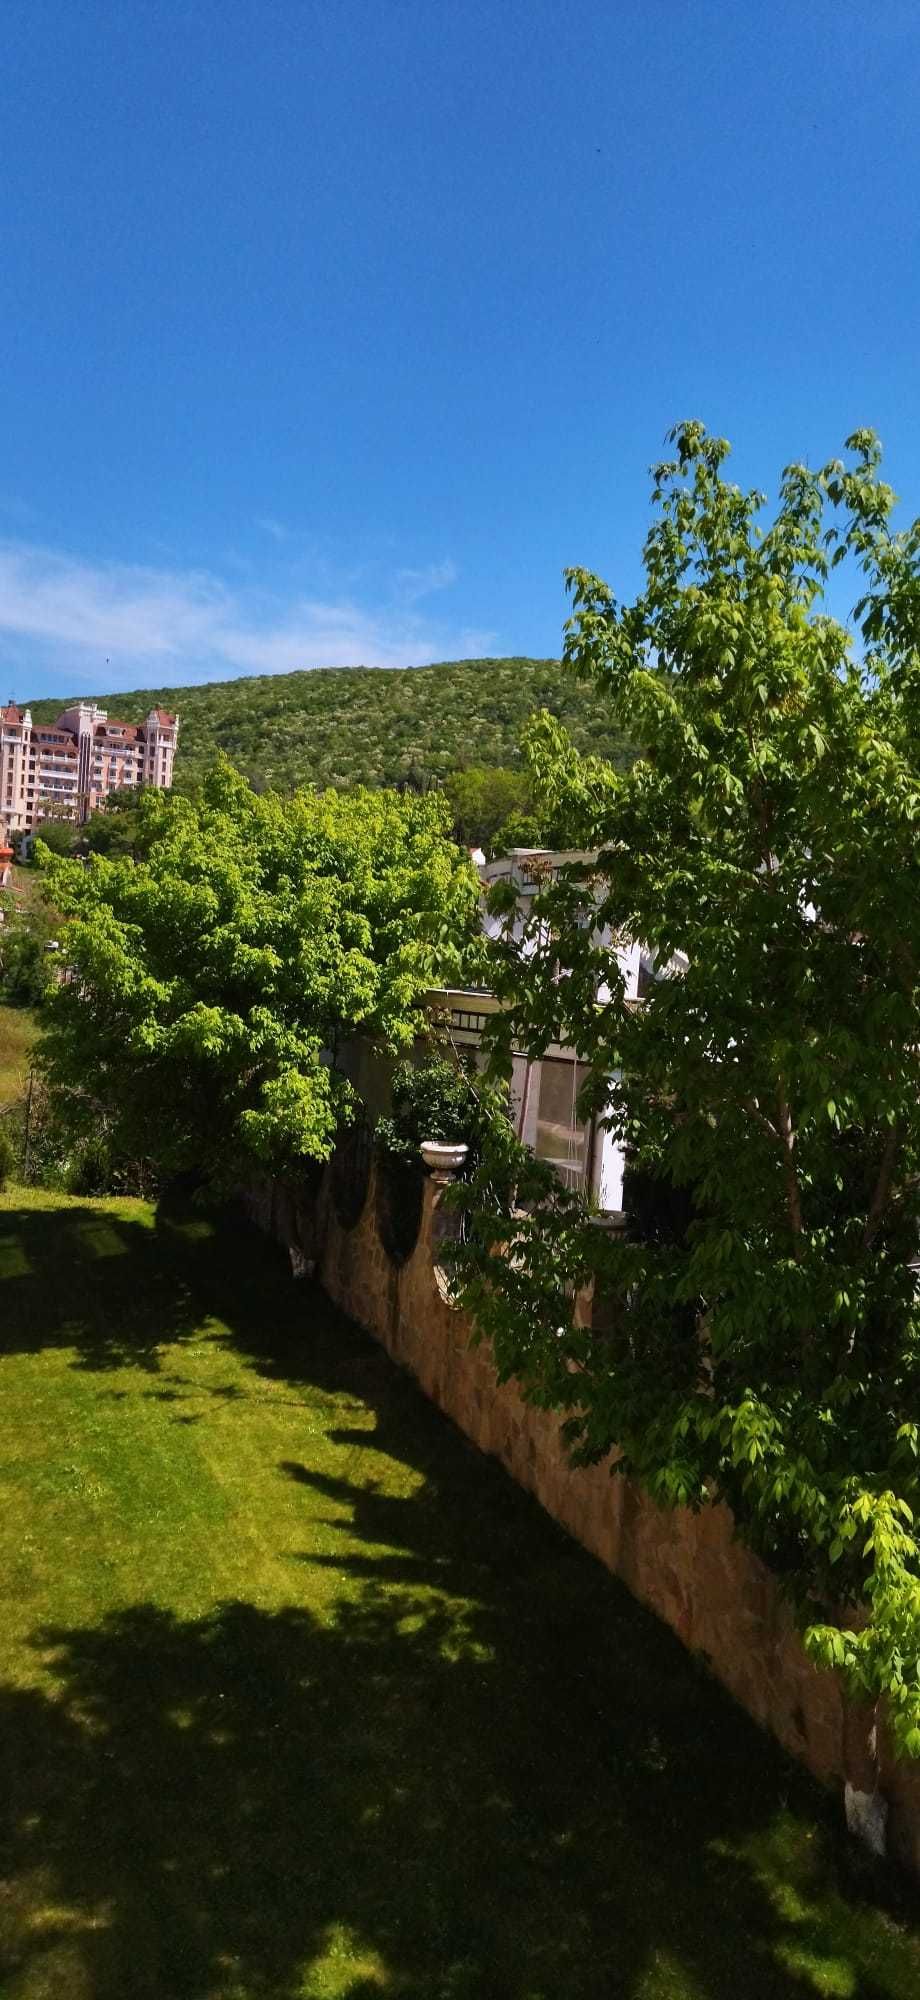 Piękny apartament do wynajęcia na wakacje  w Bułgarii w Elenite